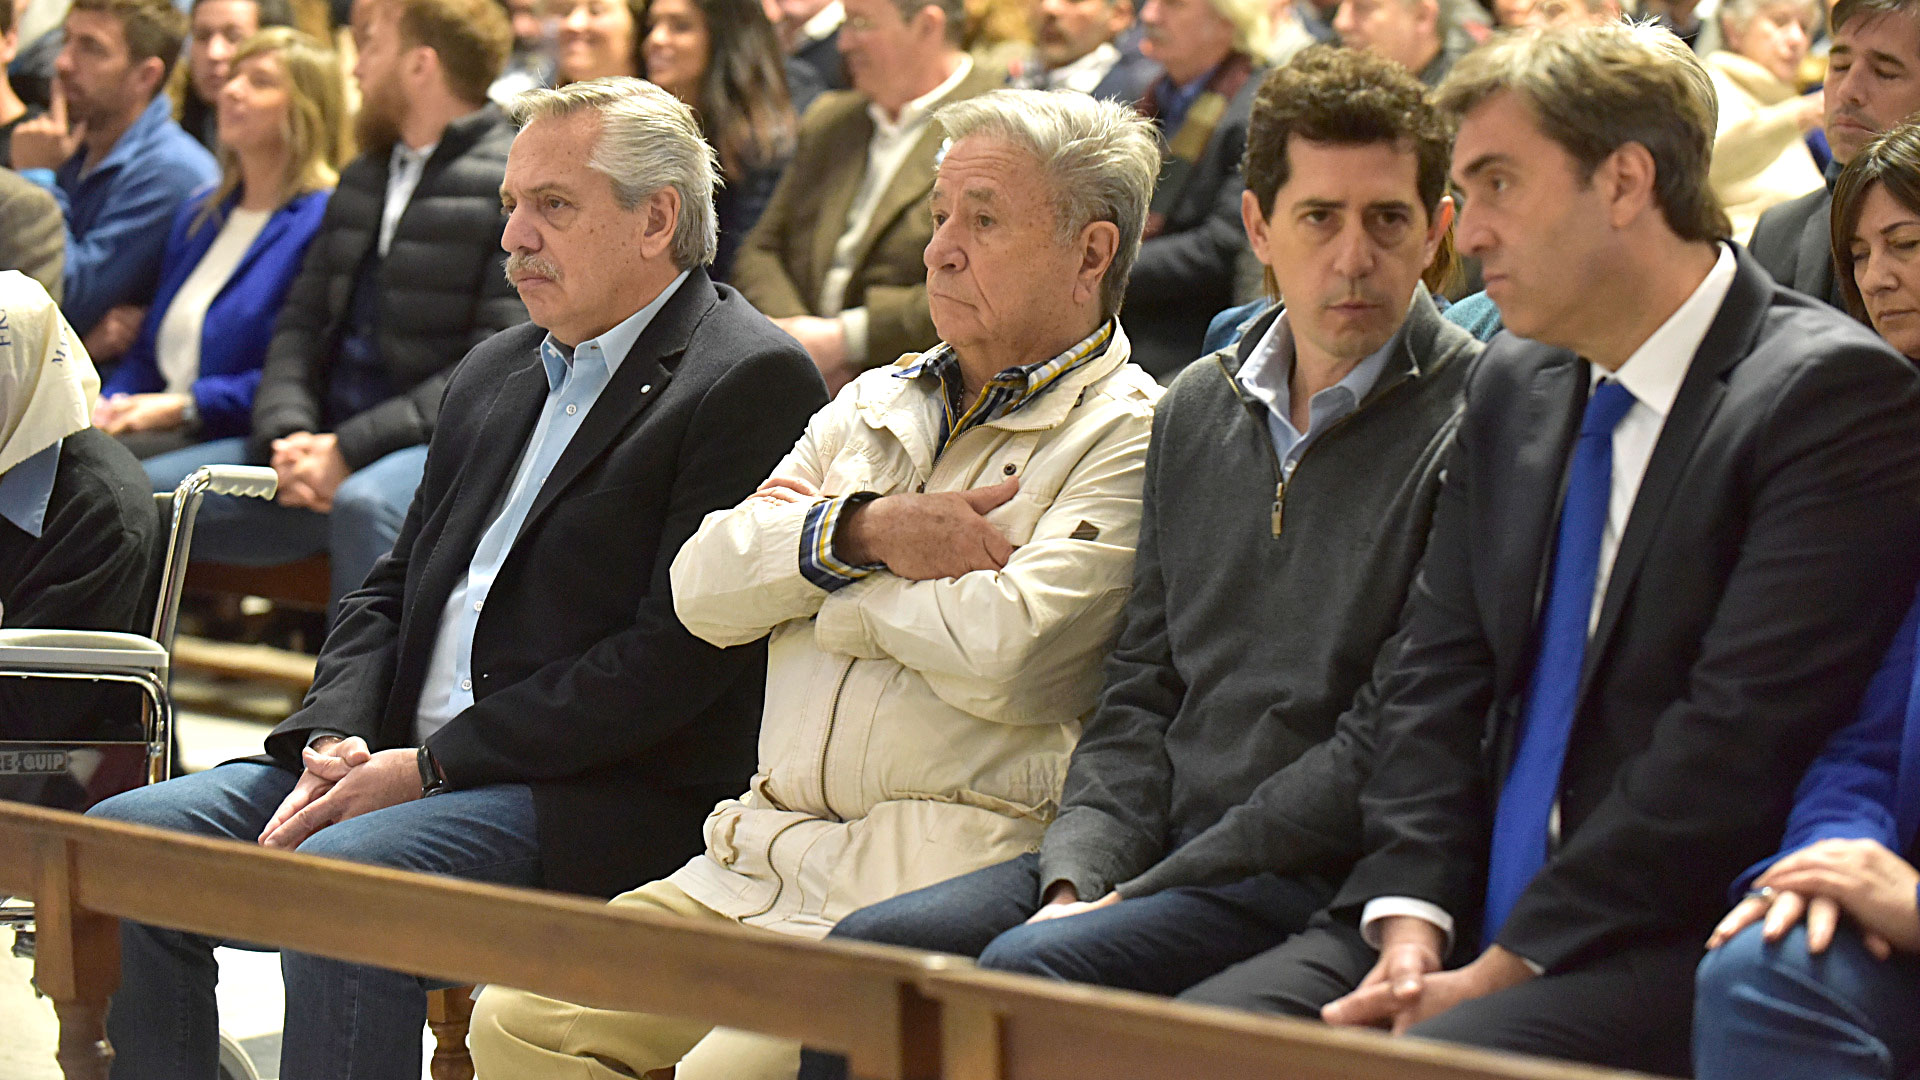 En la misa de Luján se reunió la primera plana nacional, incluyendo al Presidente y al máximo representante de Cristina Kirchner en la Casa Rosada, Wado de Pedro, en torno a un llamado a la "fraternidad" (Gustavo Gavotti)